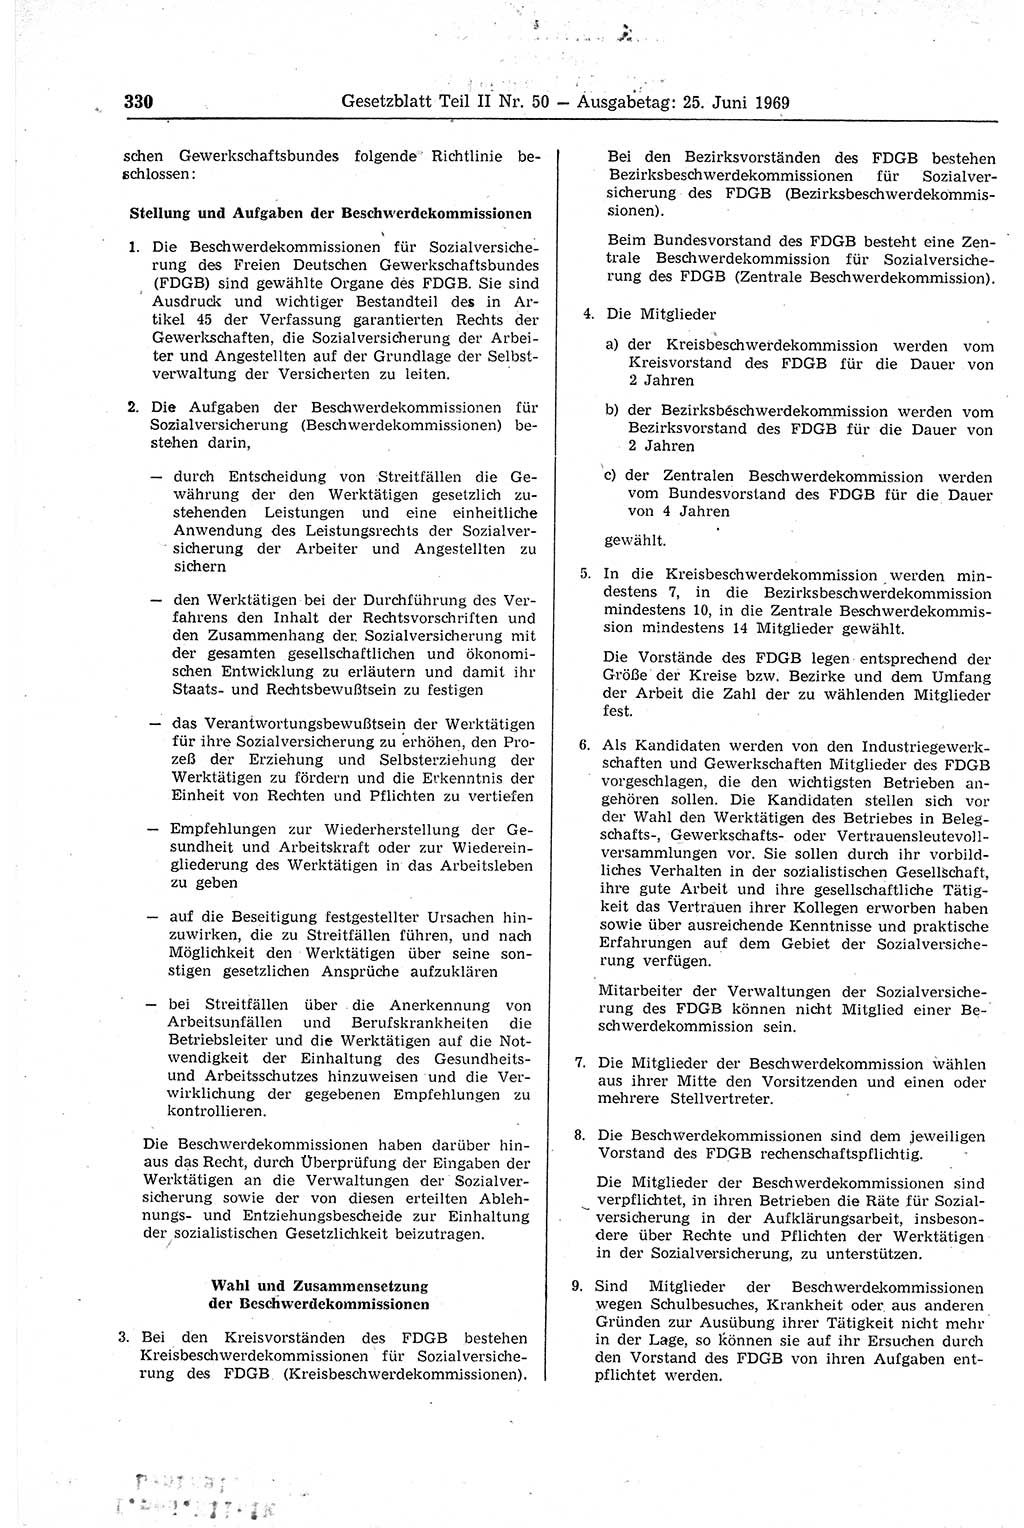 Gesetzblatt (GBl.) der Deutschen Demokratischen Republik (DDR) Teil ⅠⅠ 1969, Seite 330 (GBl. DDR ⅠⅠ 1969, S. 330)